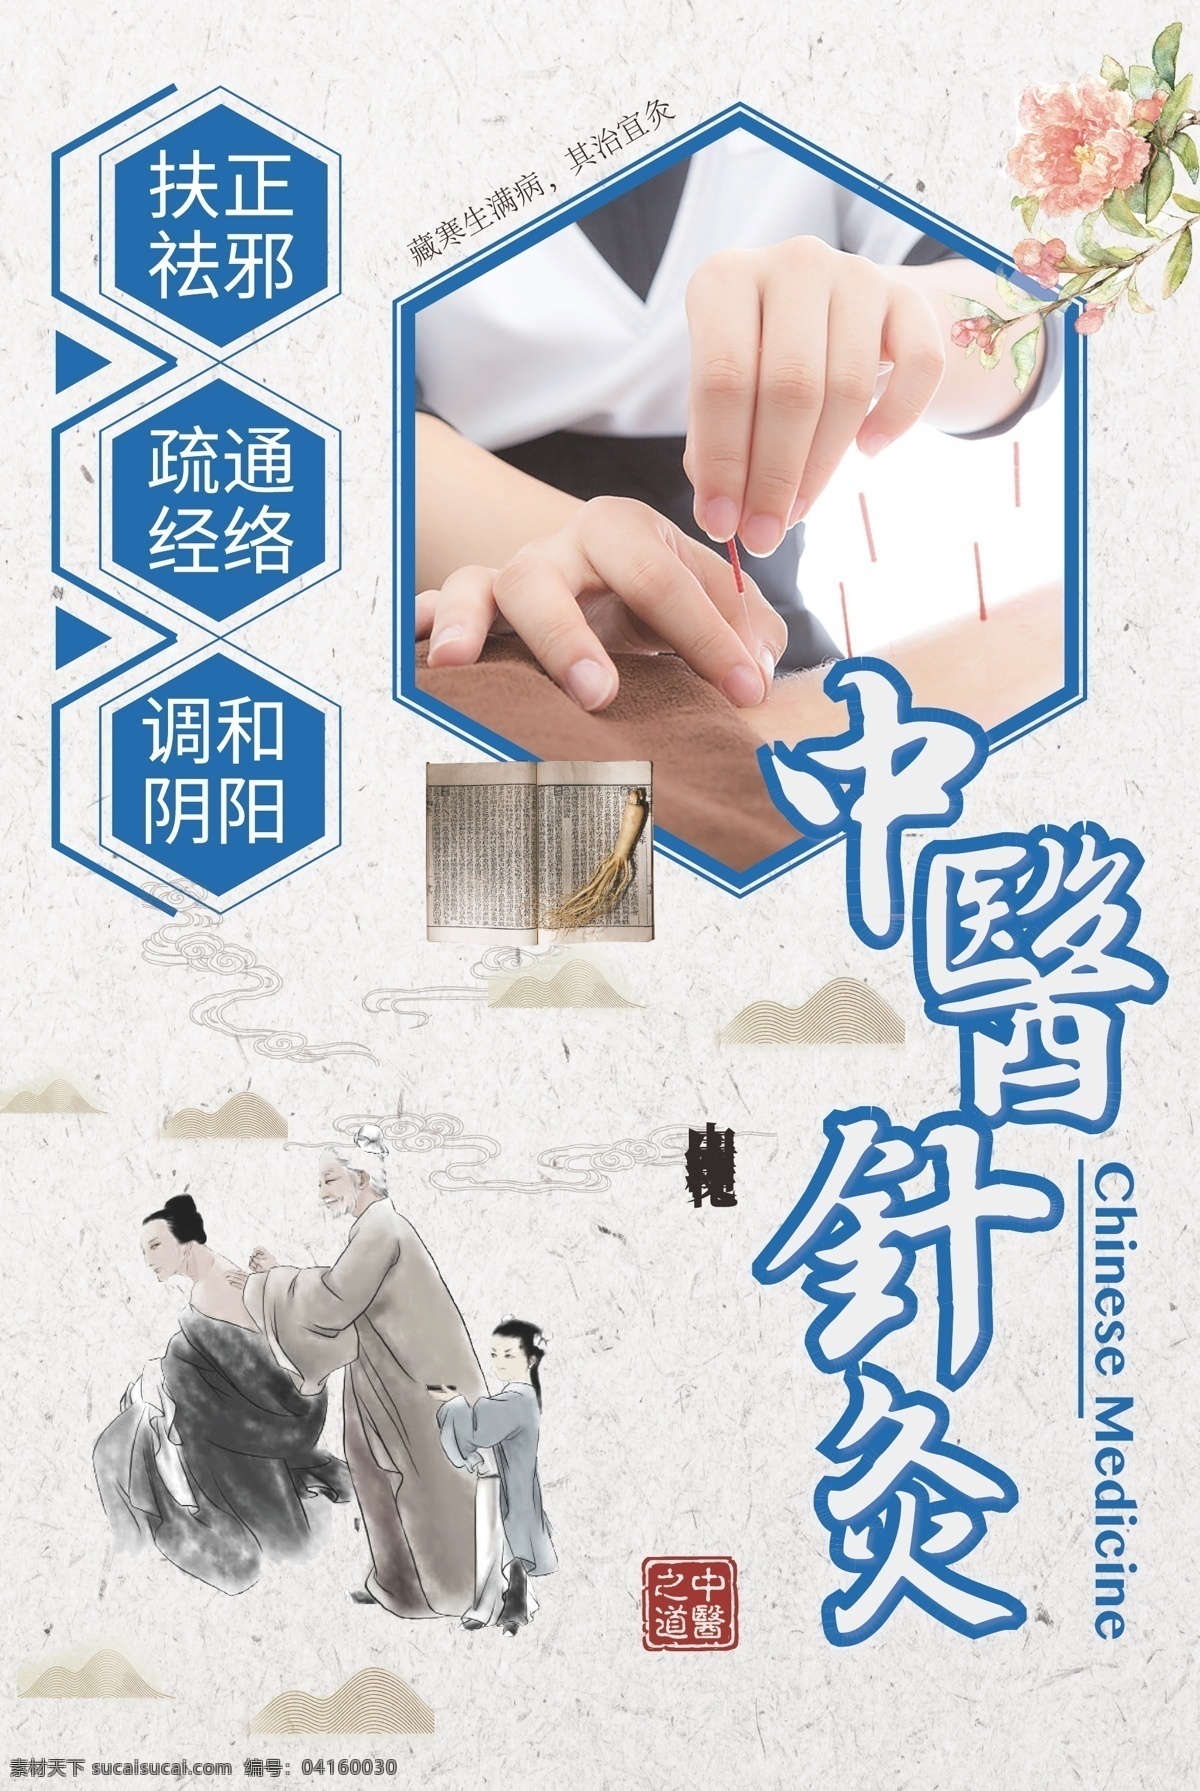 中医针灸 医学 传统文化 海报 中医 针灸 传统 文化